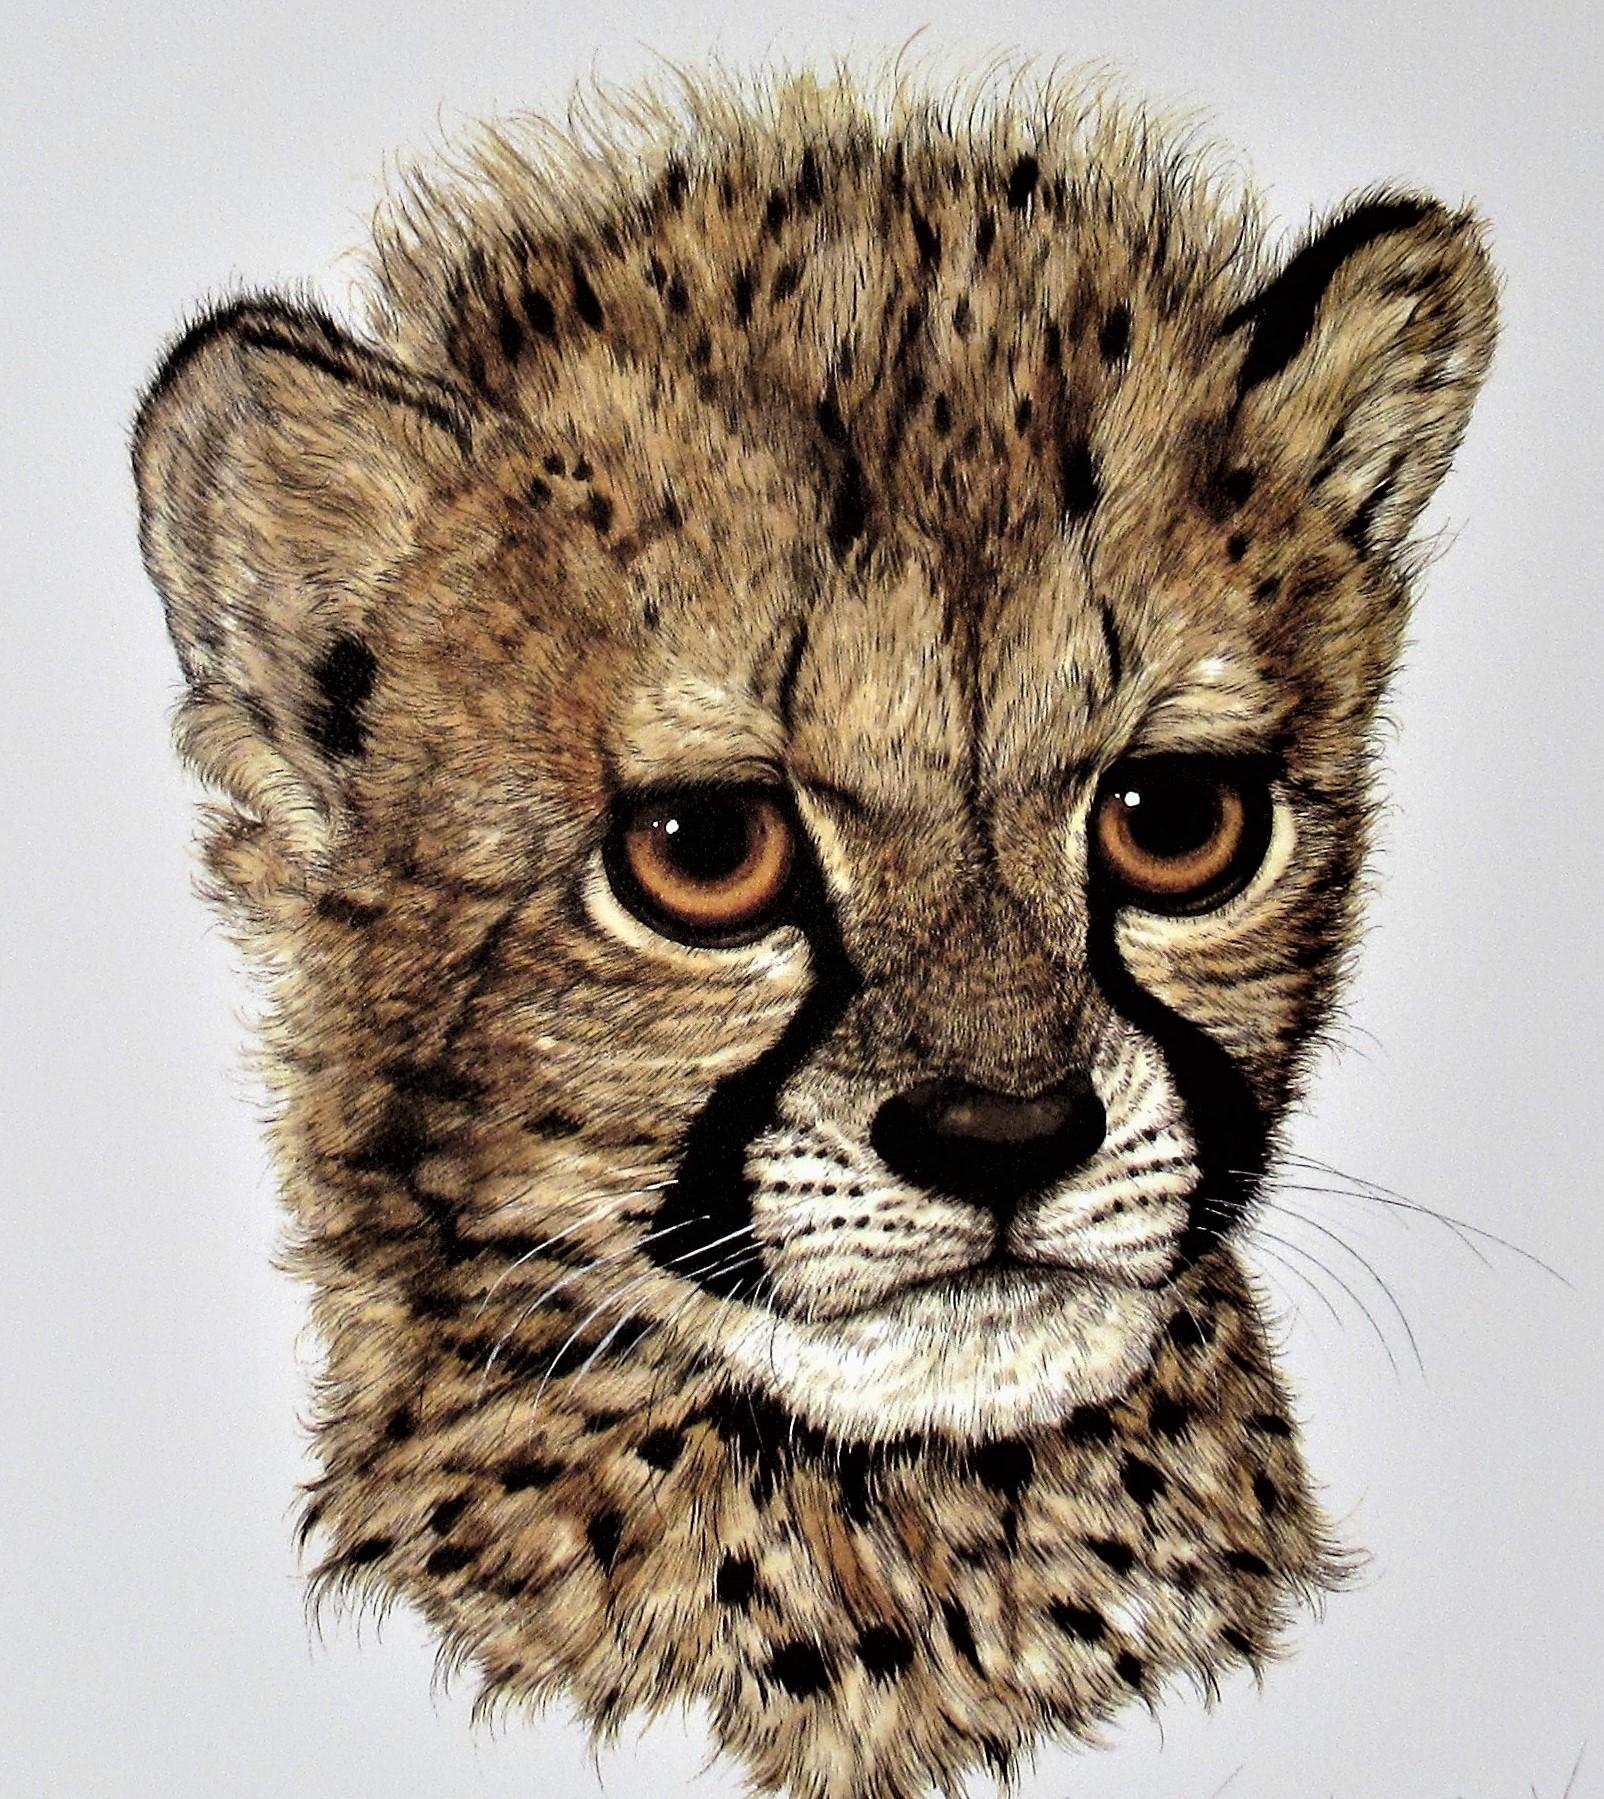 Leopard's Cub - Print by Jacquie Marie Vaux